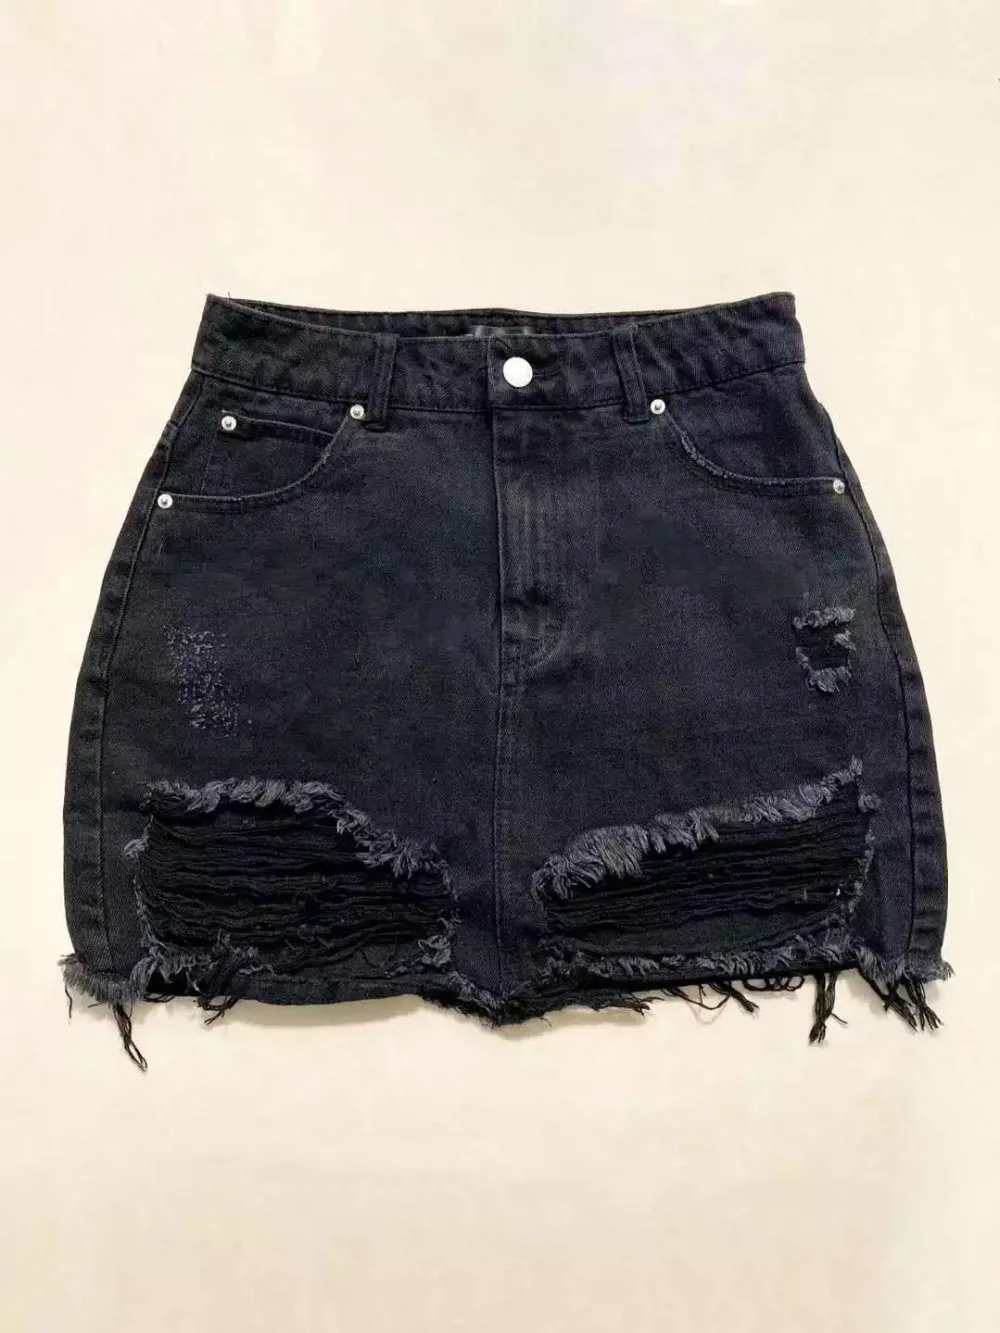 RQOKIA 2019 Новая Европейская и американская мода простая джинсовая юбка с дырками джинсы мини-юбка-пачка выше колена